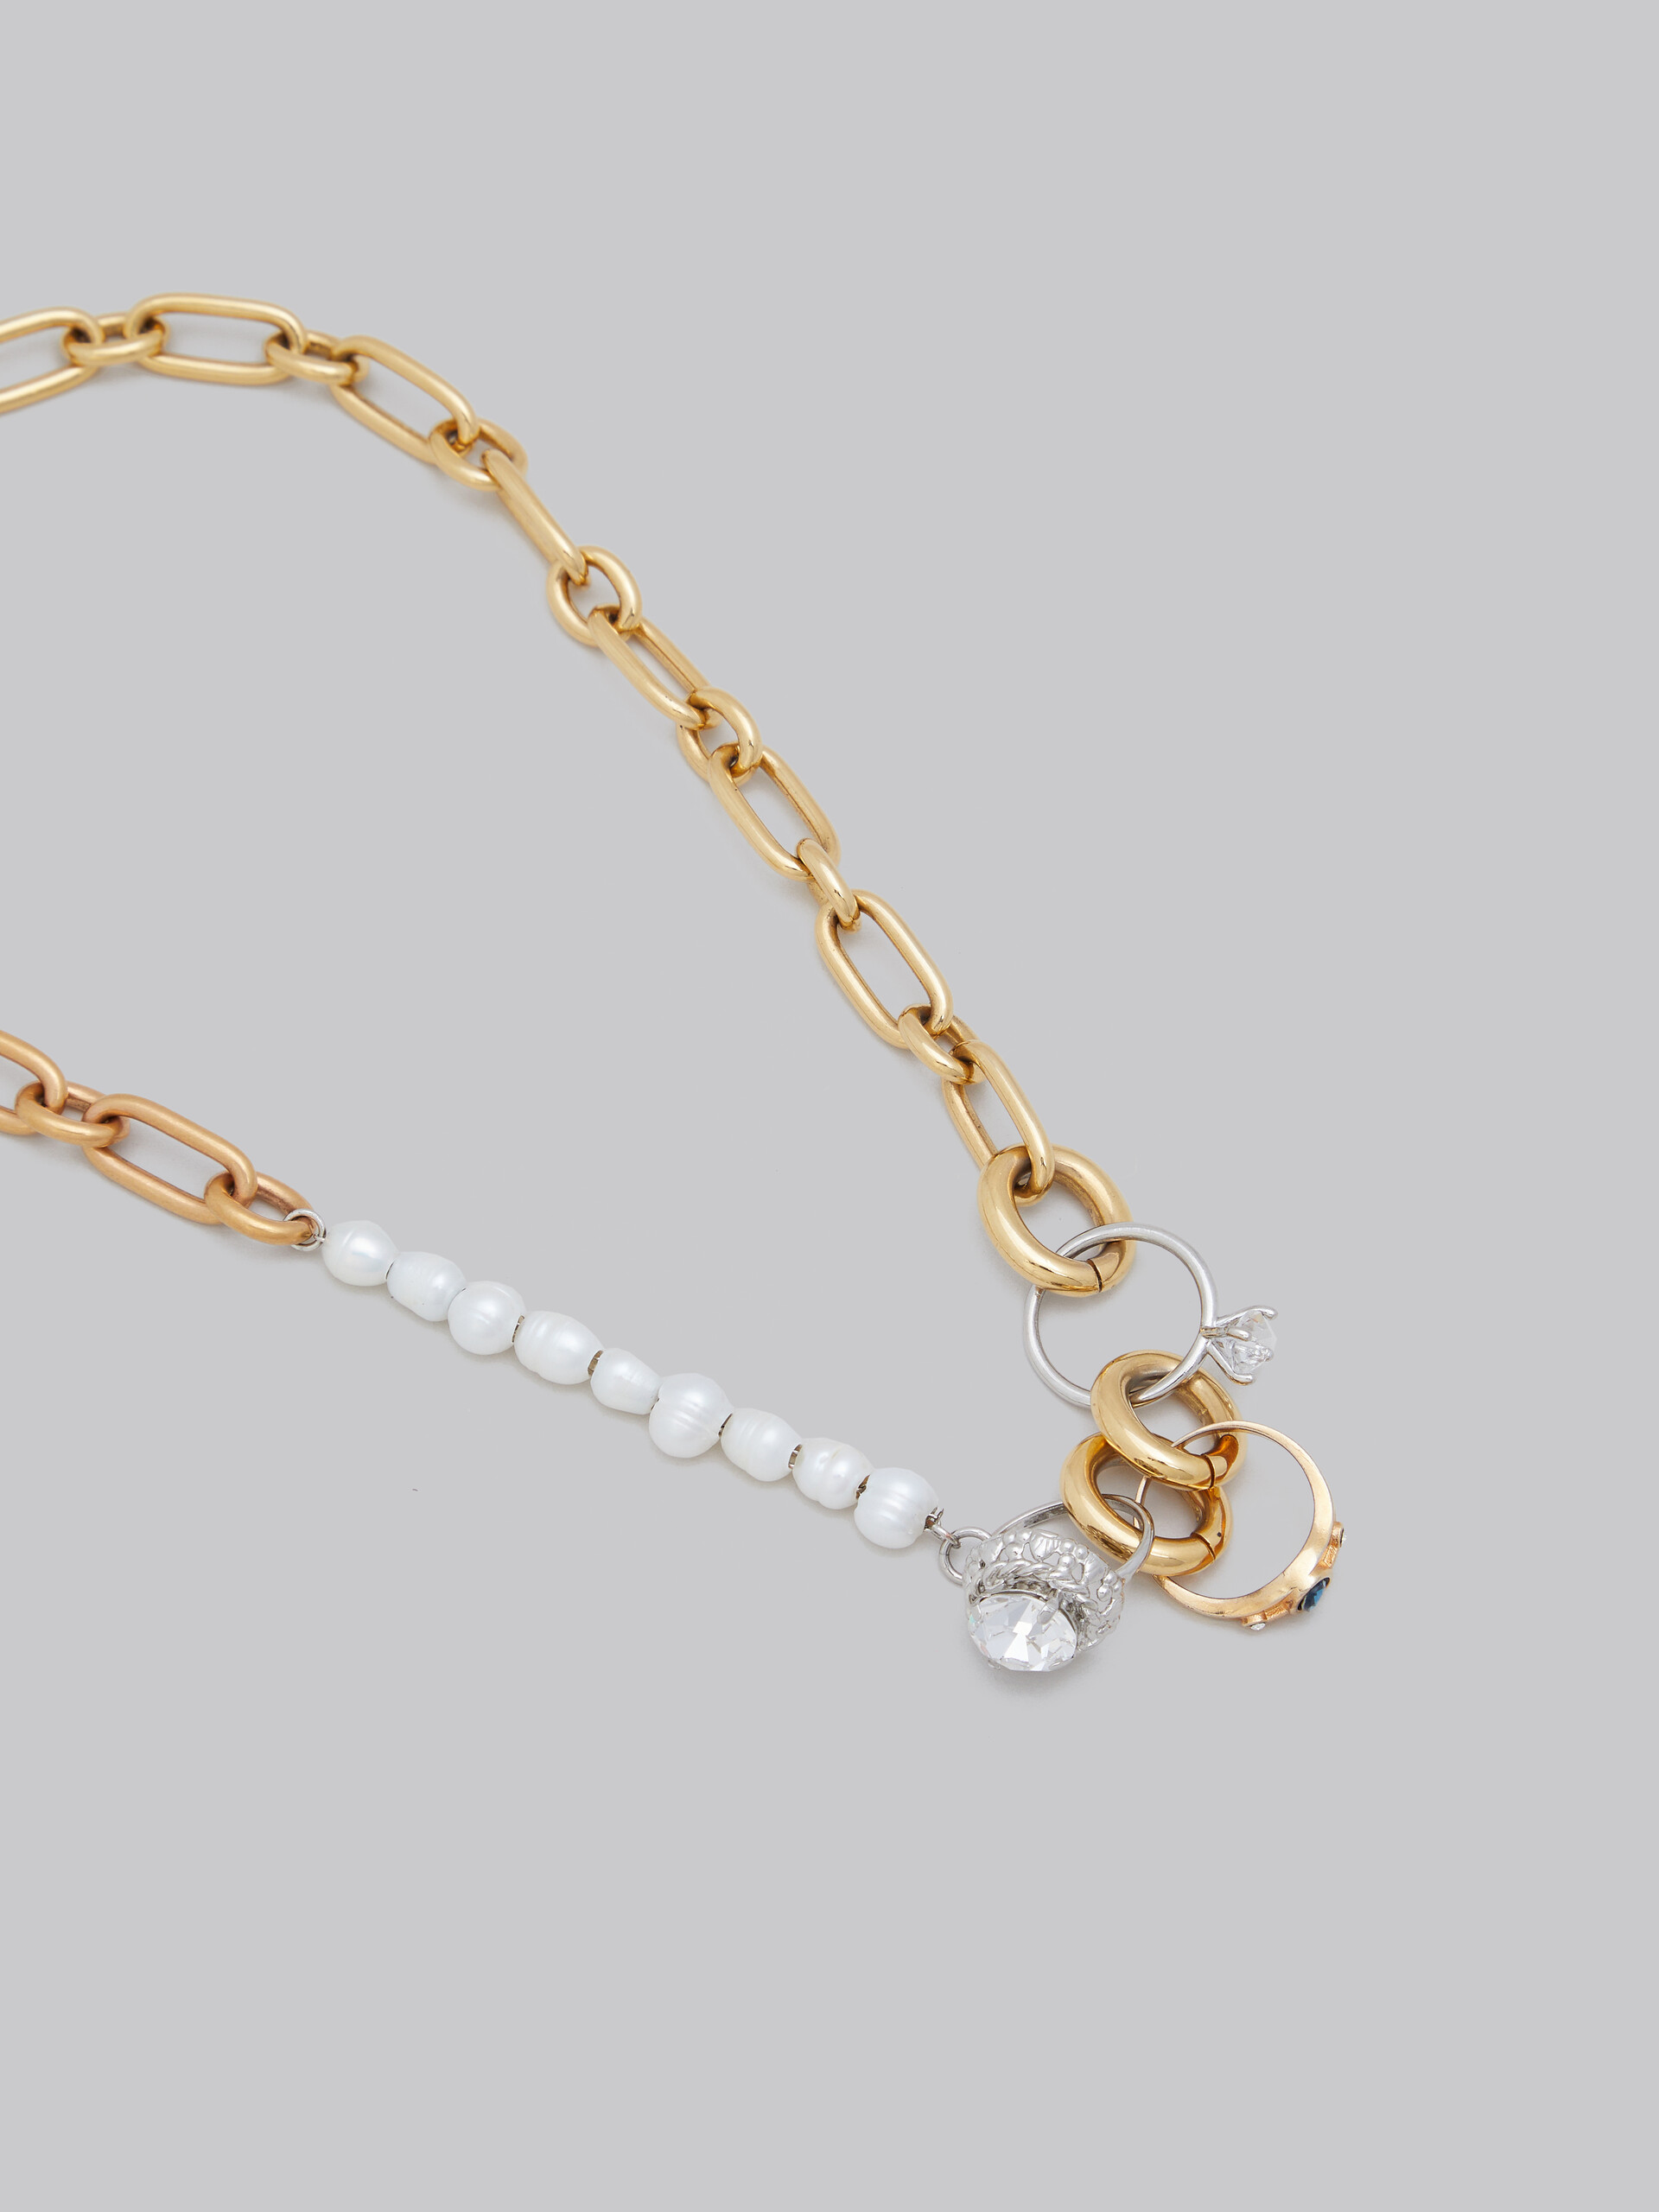 Collier en chaîne avec différents maillons, perles et anneaux - Colliers - Image 3